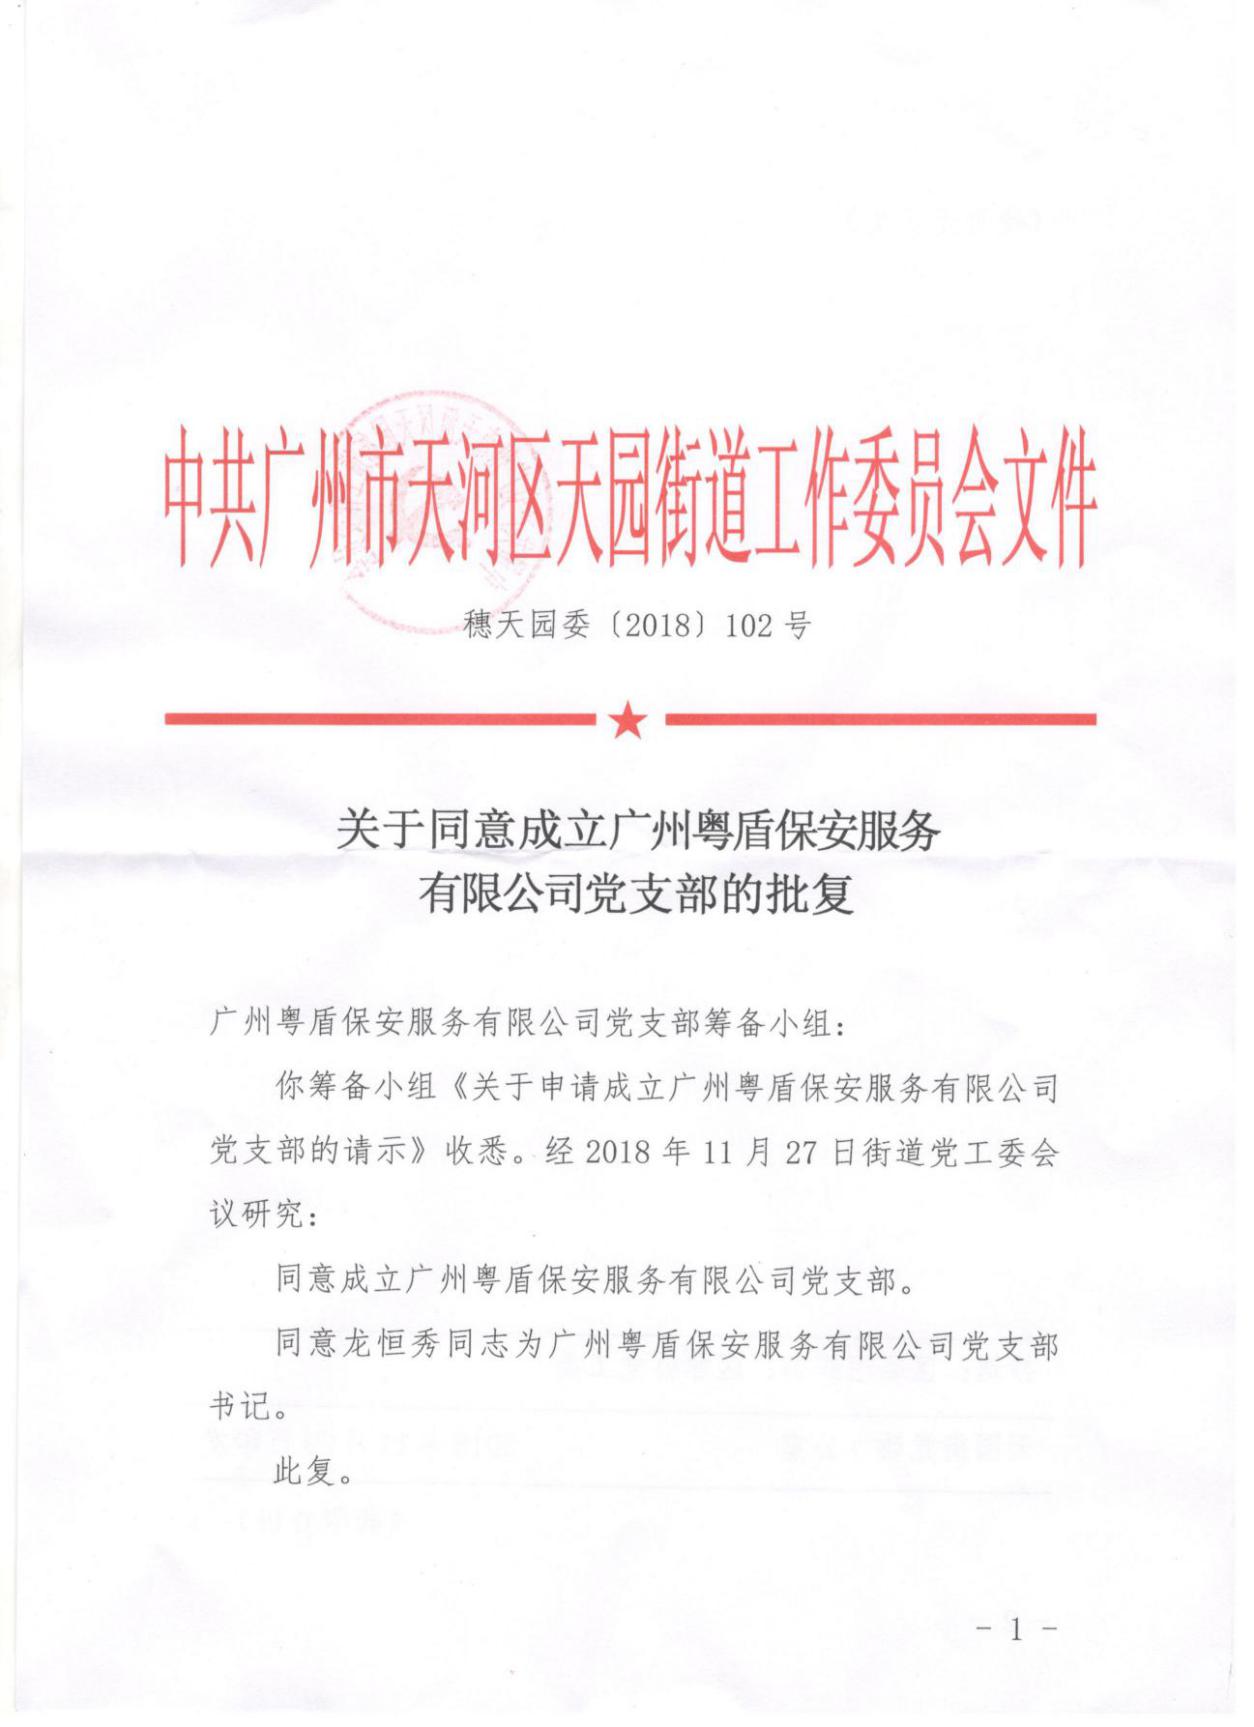 關于同意成立廣州粵盾保安服務有限公司黨支部的批復